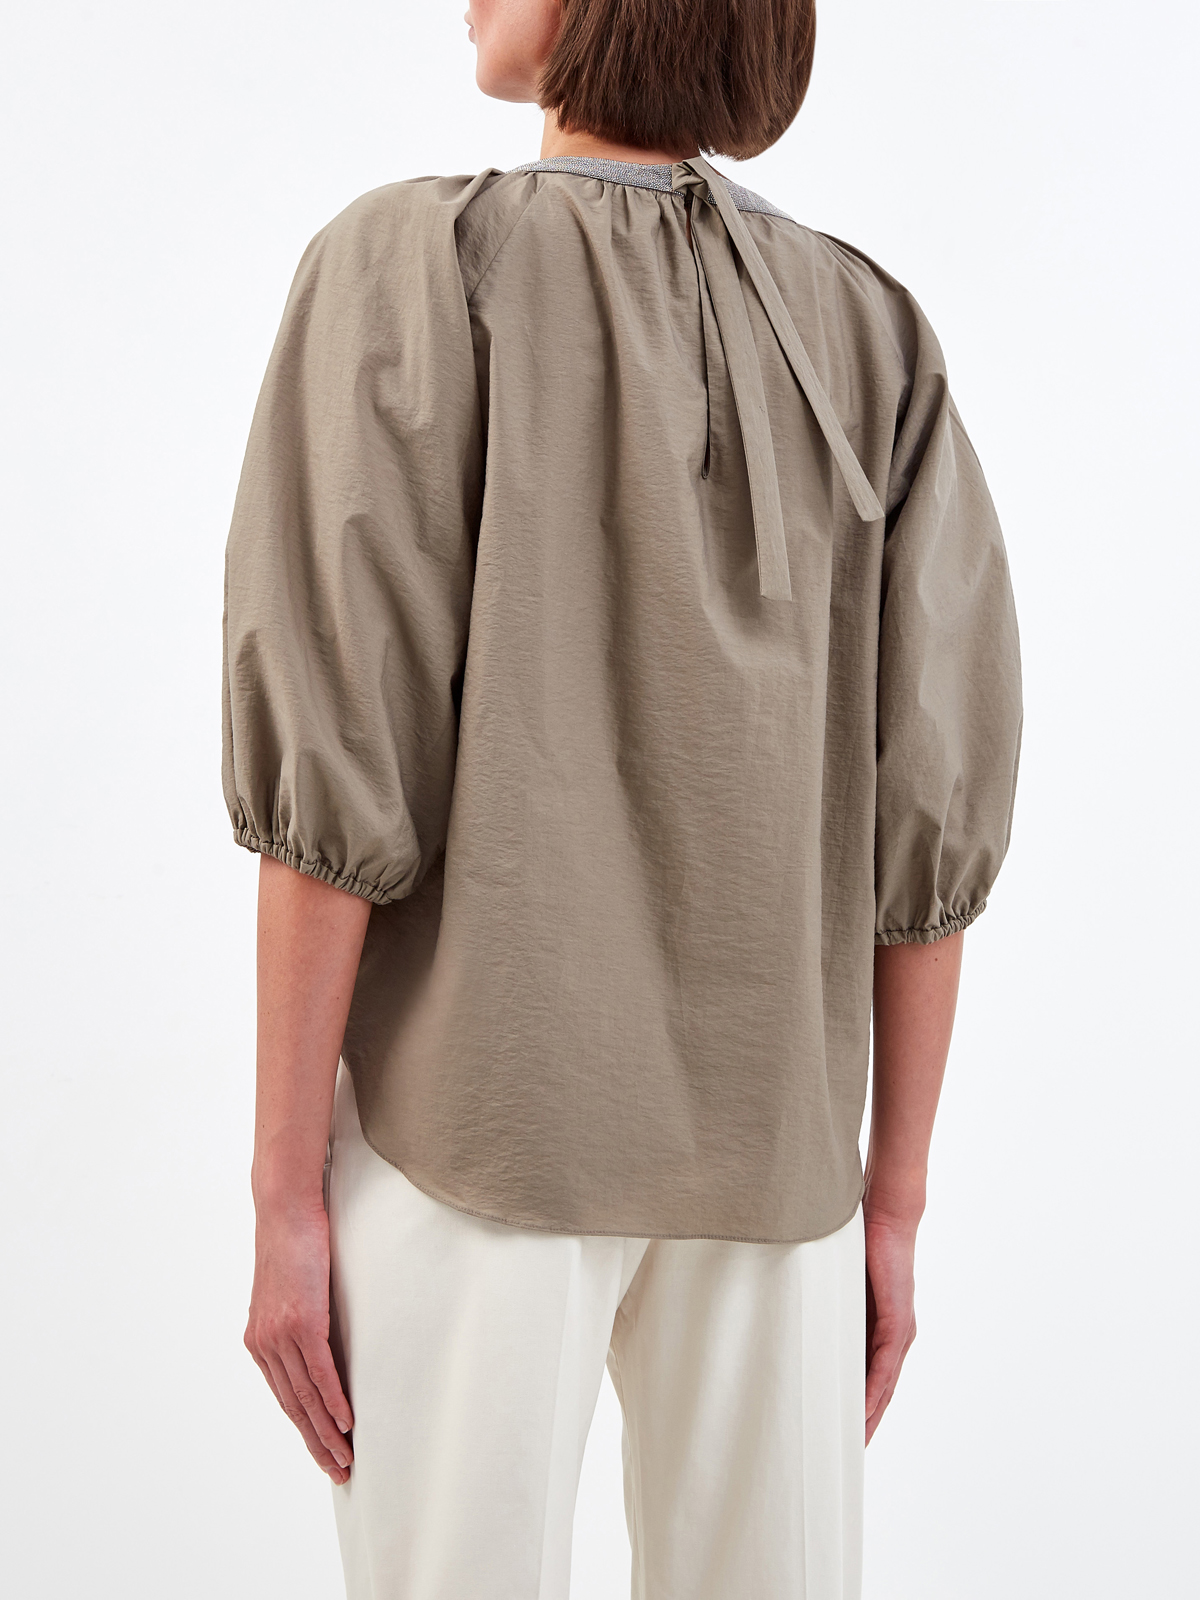 Блуза с мерцающим декором Мониль и архитектурными рукавами BRUNELLO CUCINELLI, цвет коричневый, размер 42;44;46;40 - фото 4